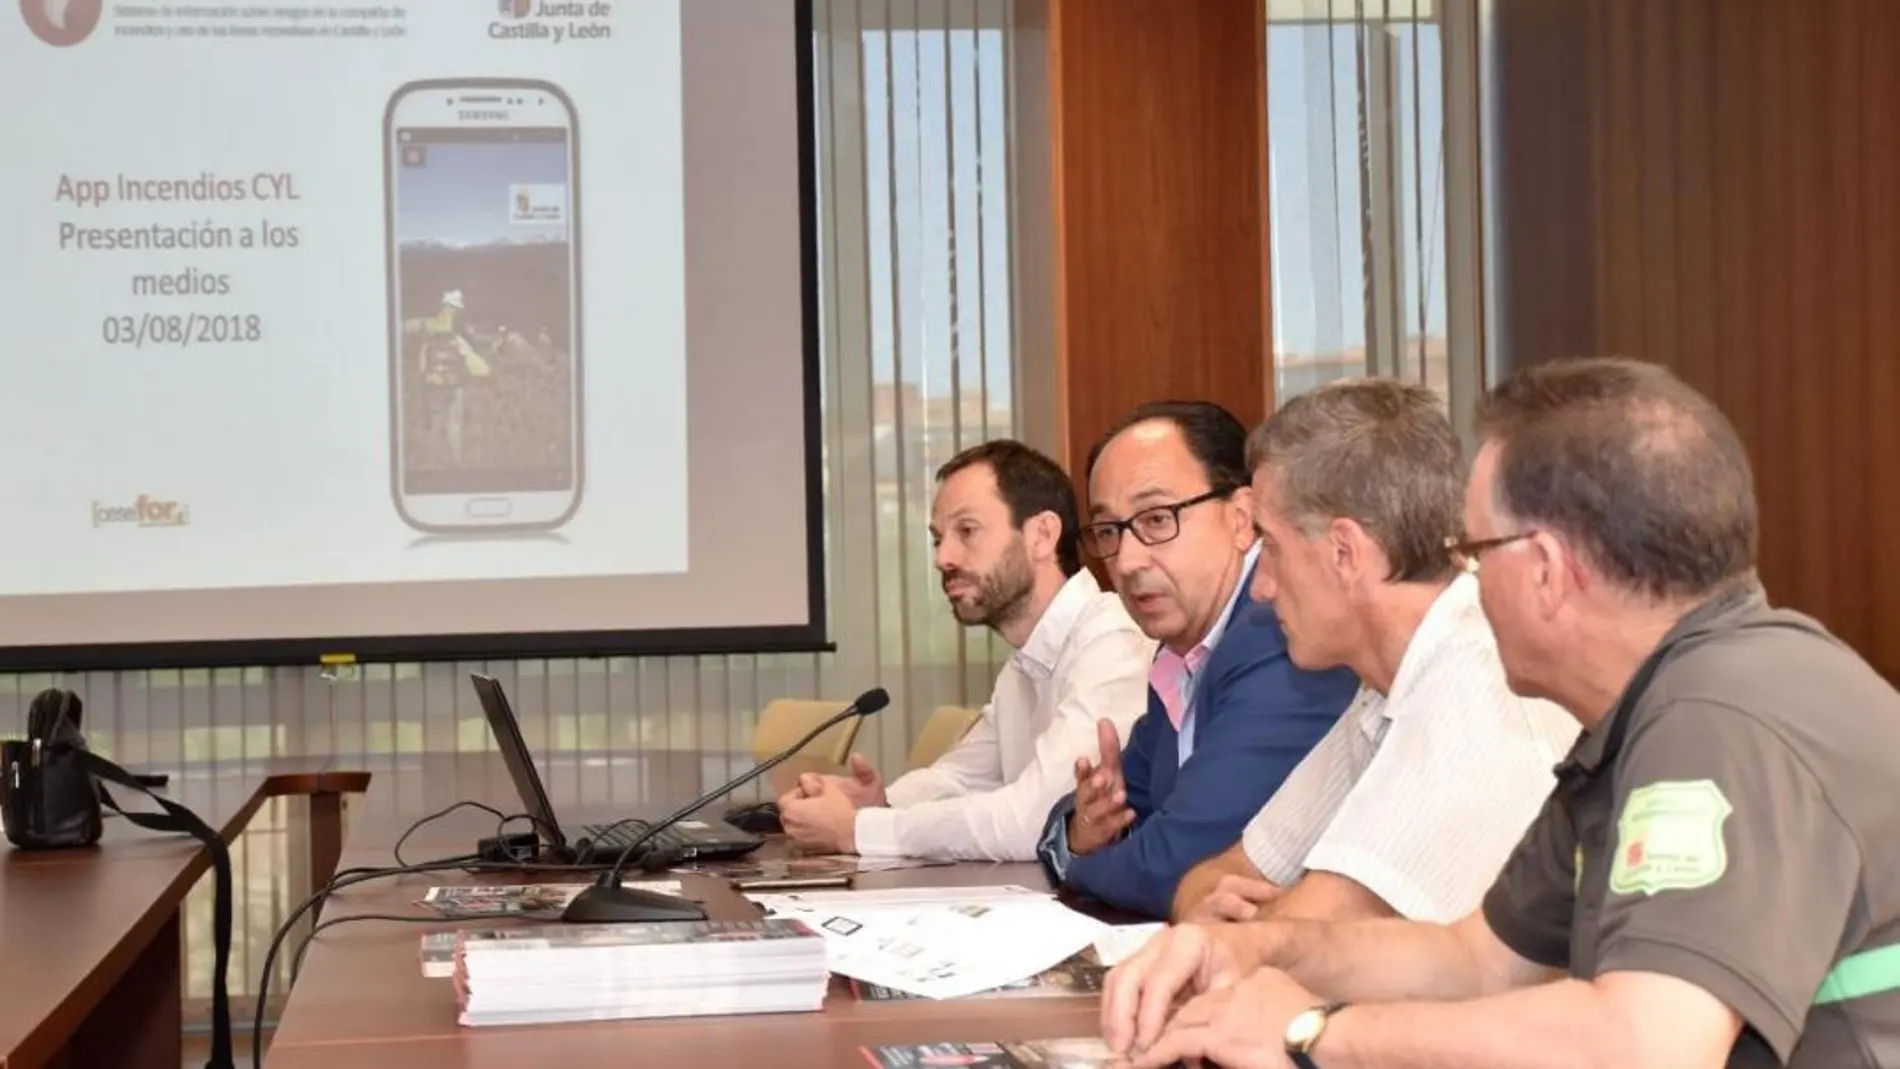 Manuel López, Rodrigo Gómez y José Antonio Lucas presentan la nueva aplicación móvil